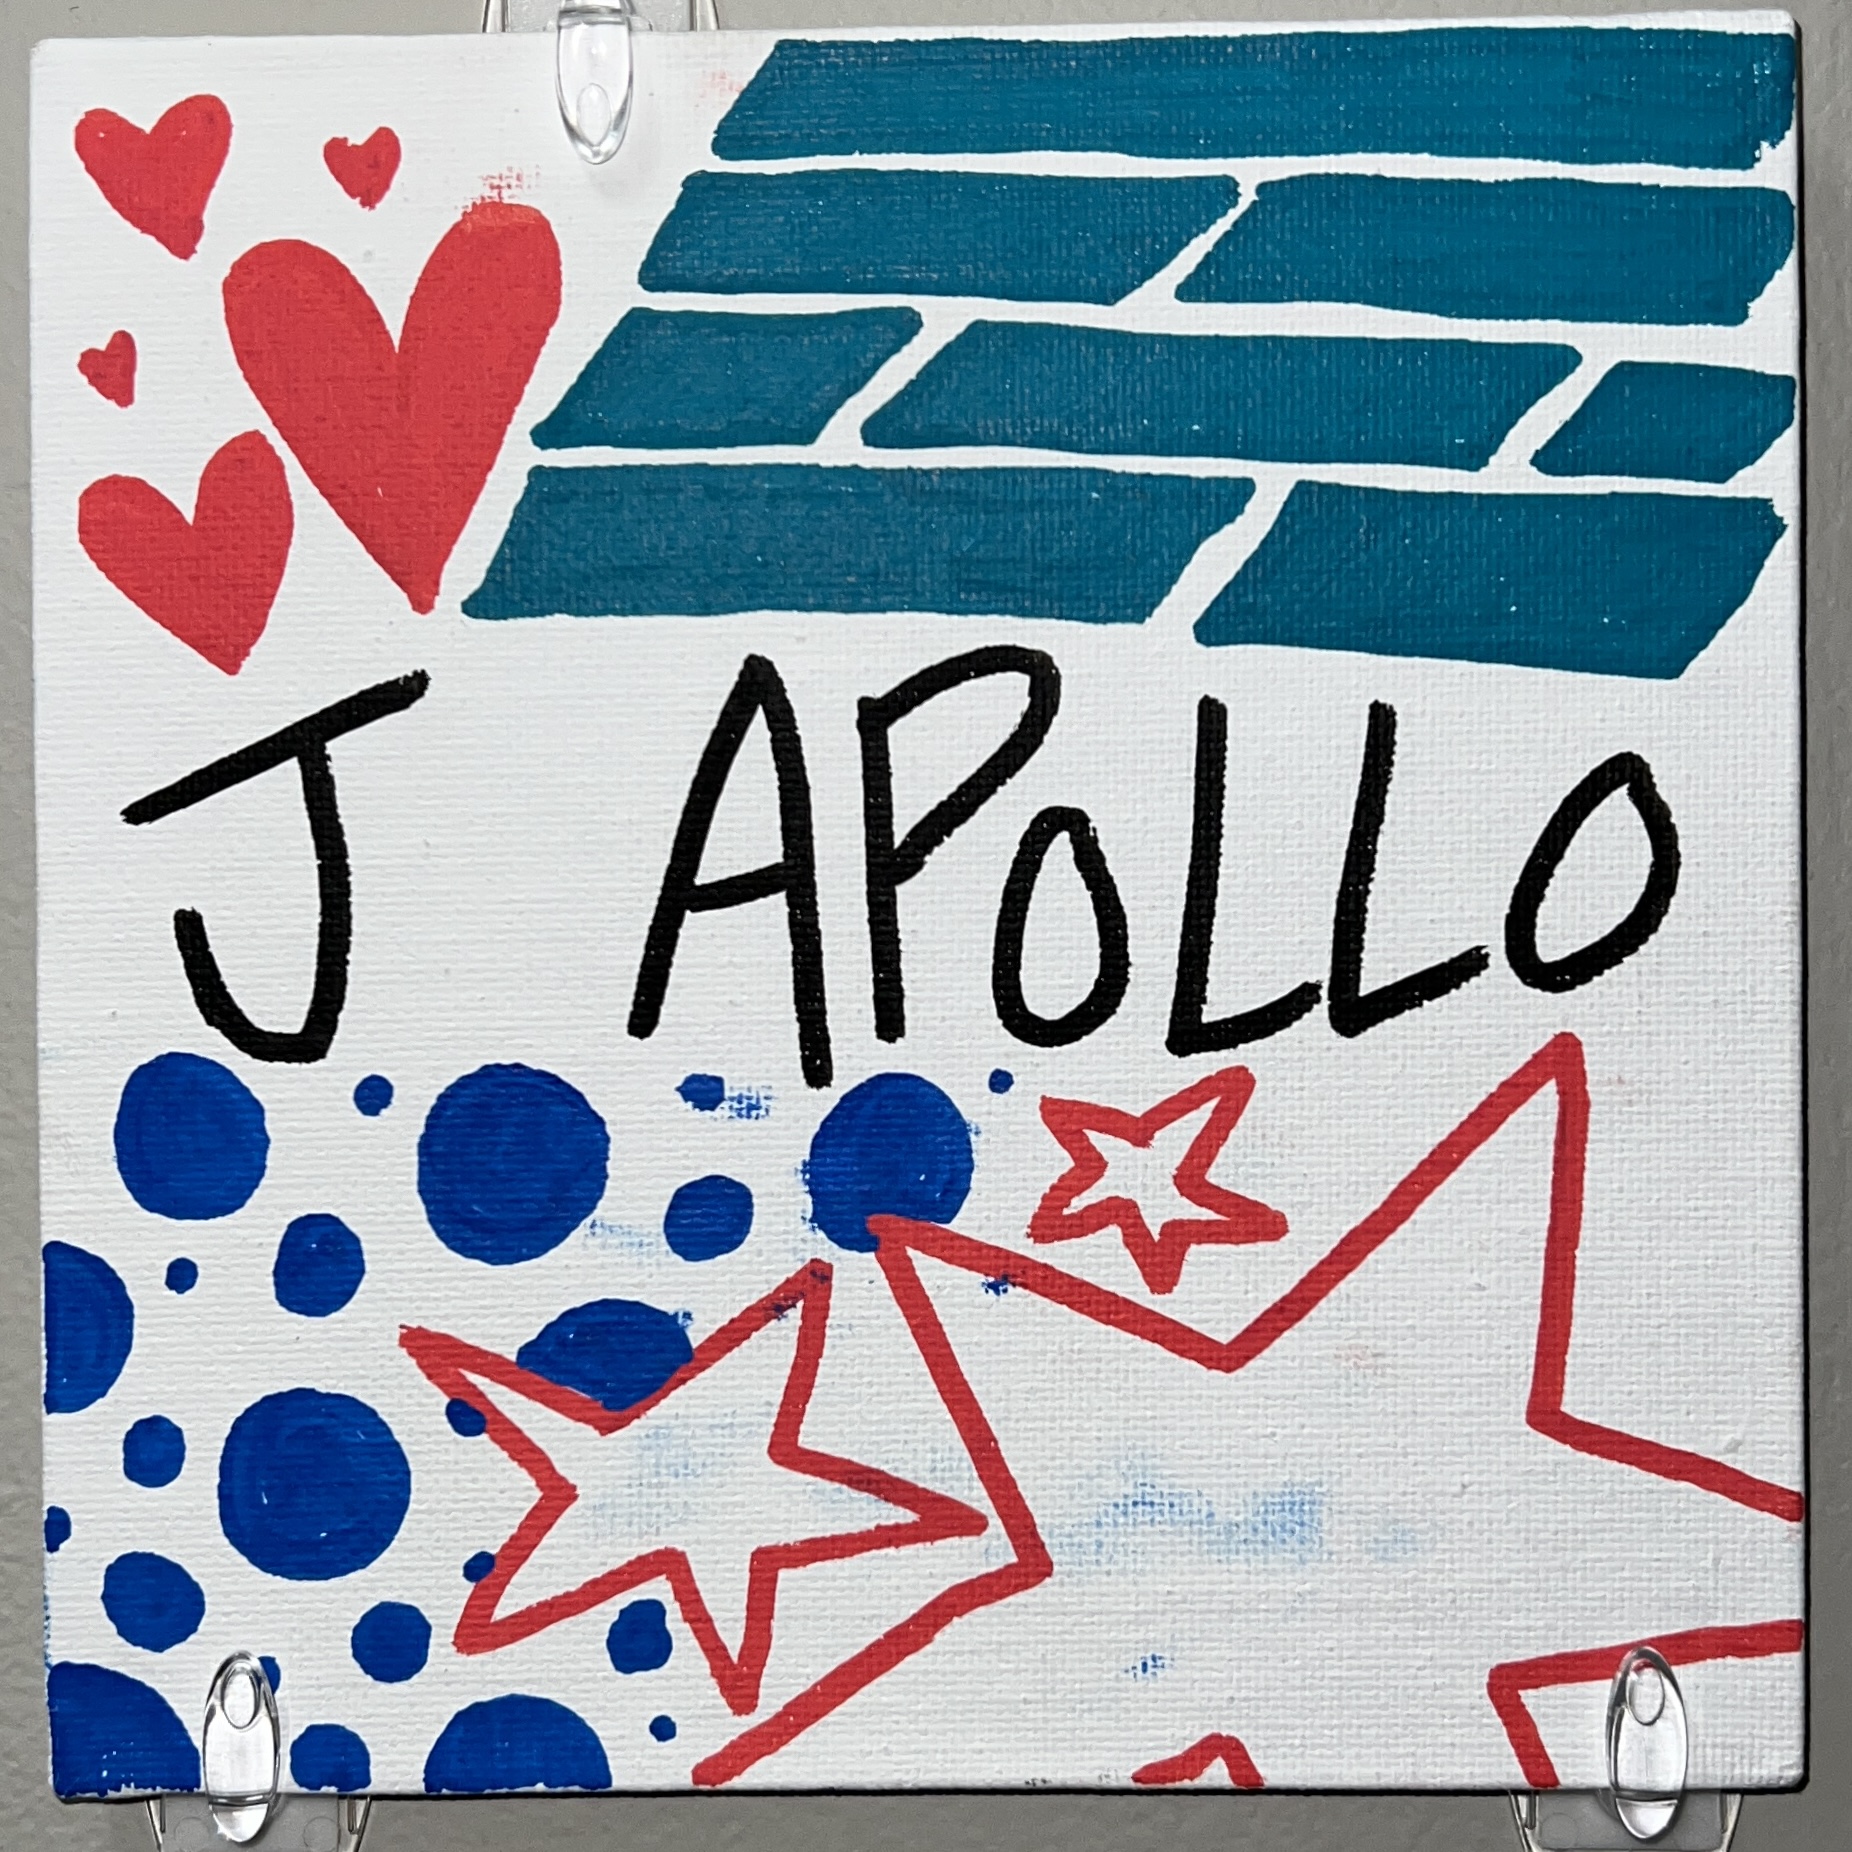 J Apollo